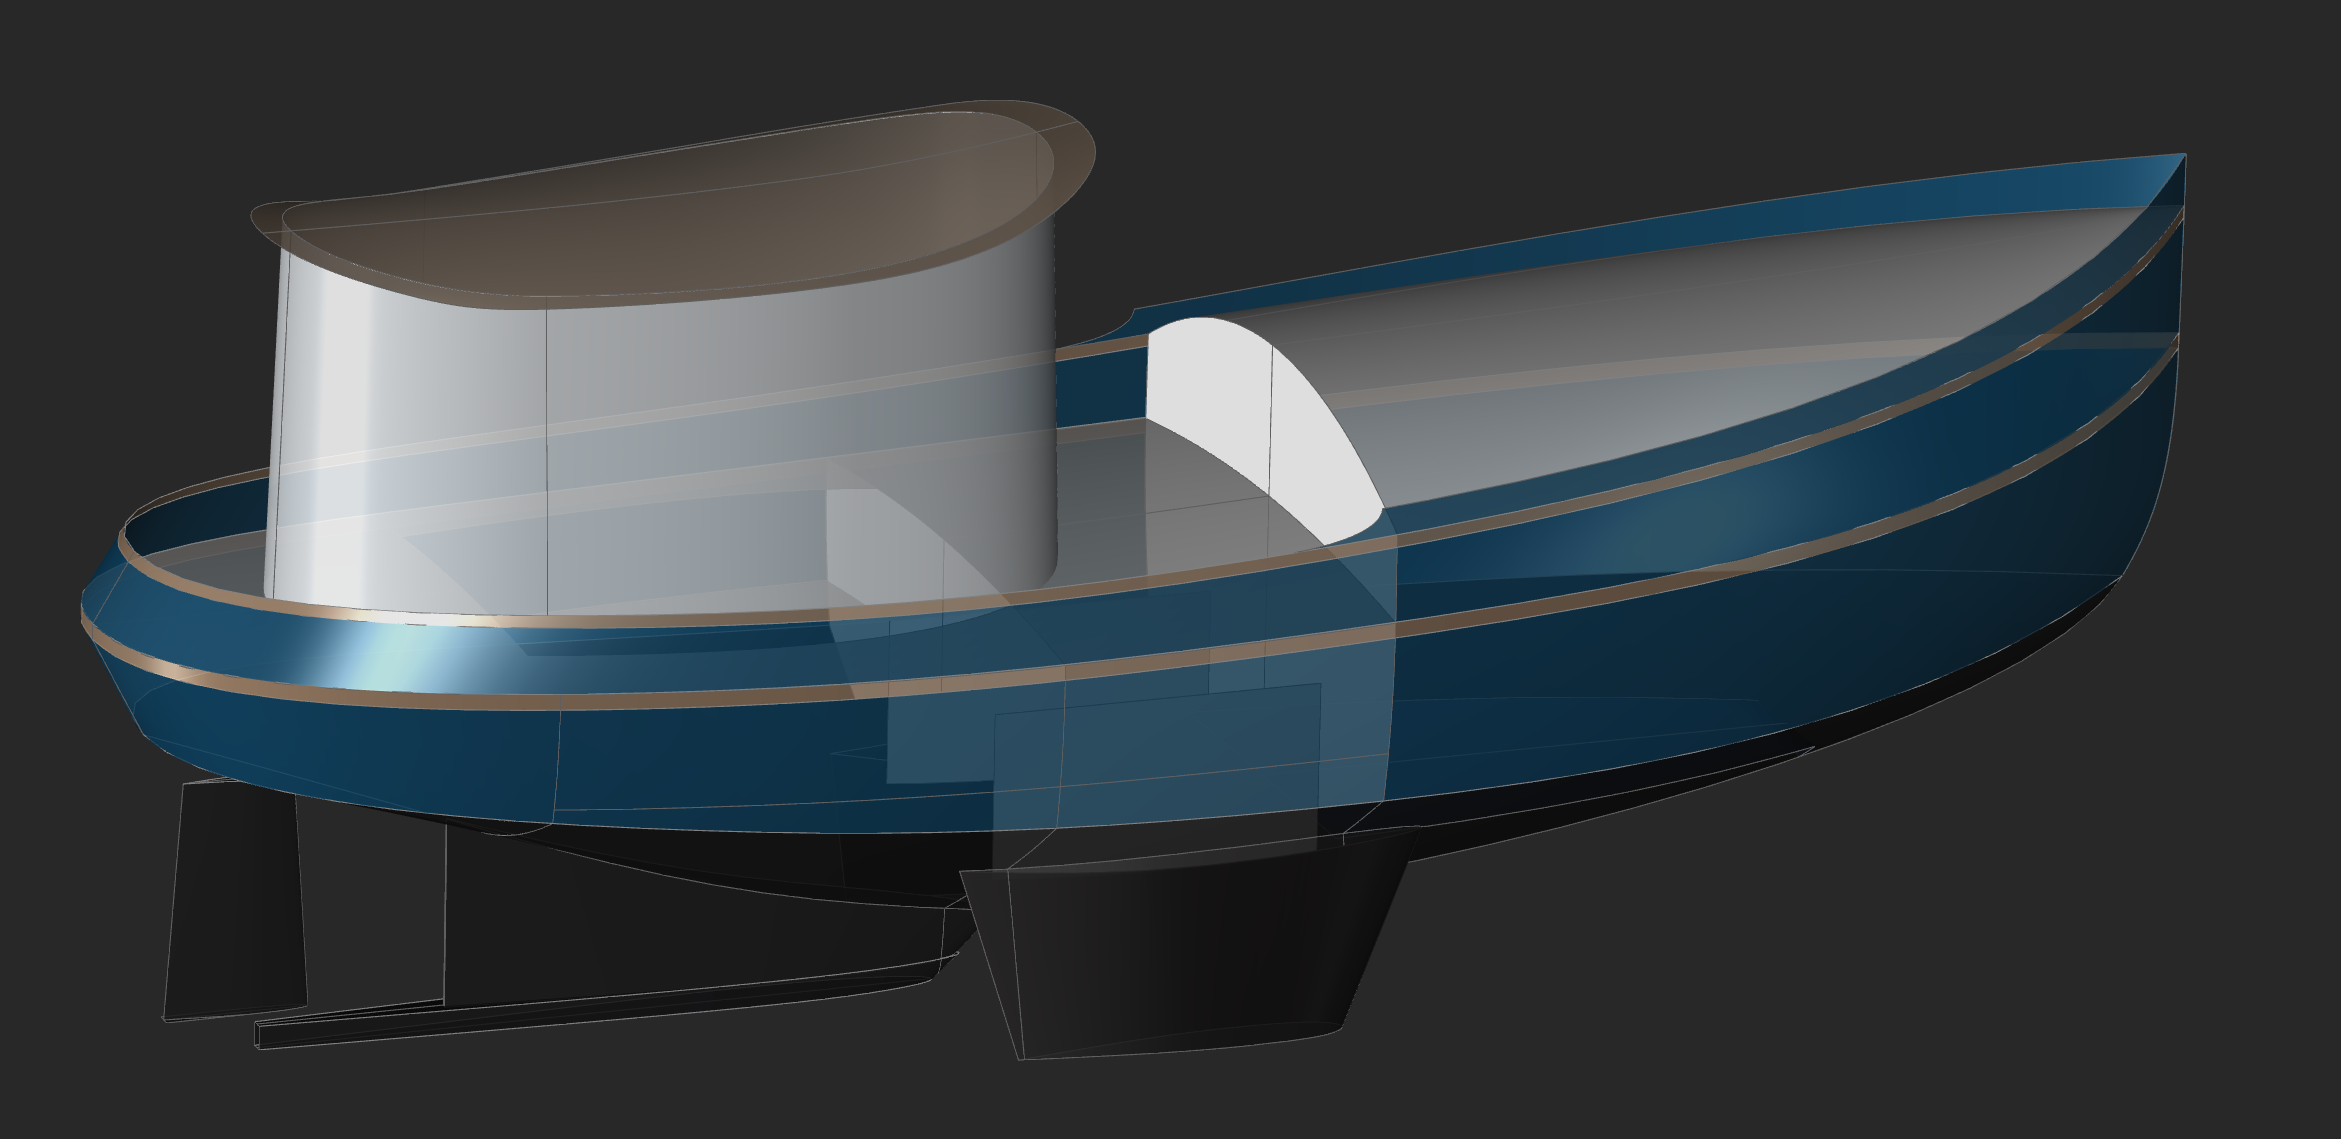 30' Sweet Okole Trawler Yacht - Kasten Marine Design, Inc.